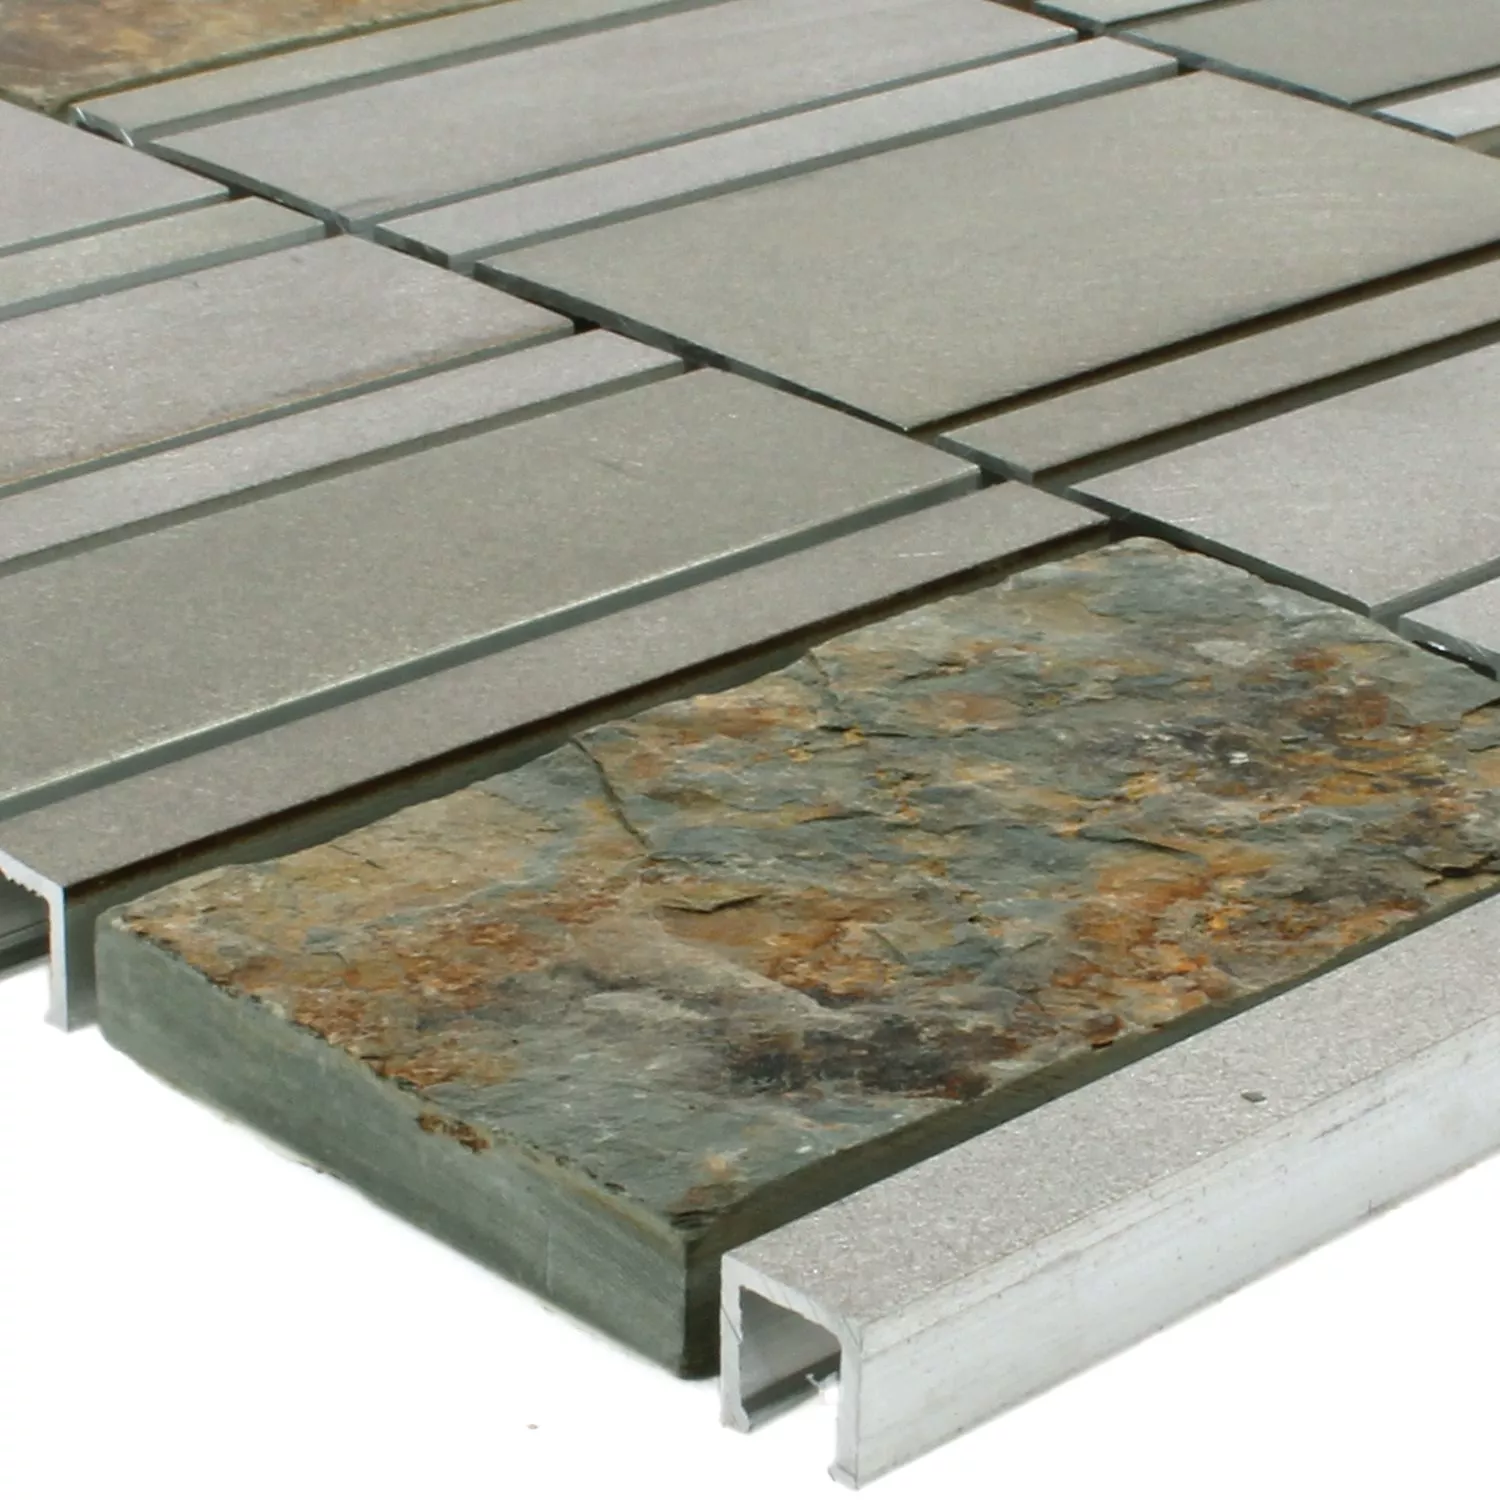 Sample Mosaic Tiles Natural Stone Aluminium Avanti Brown